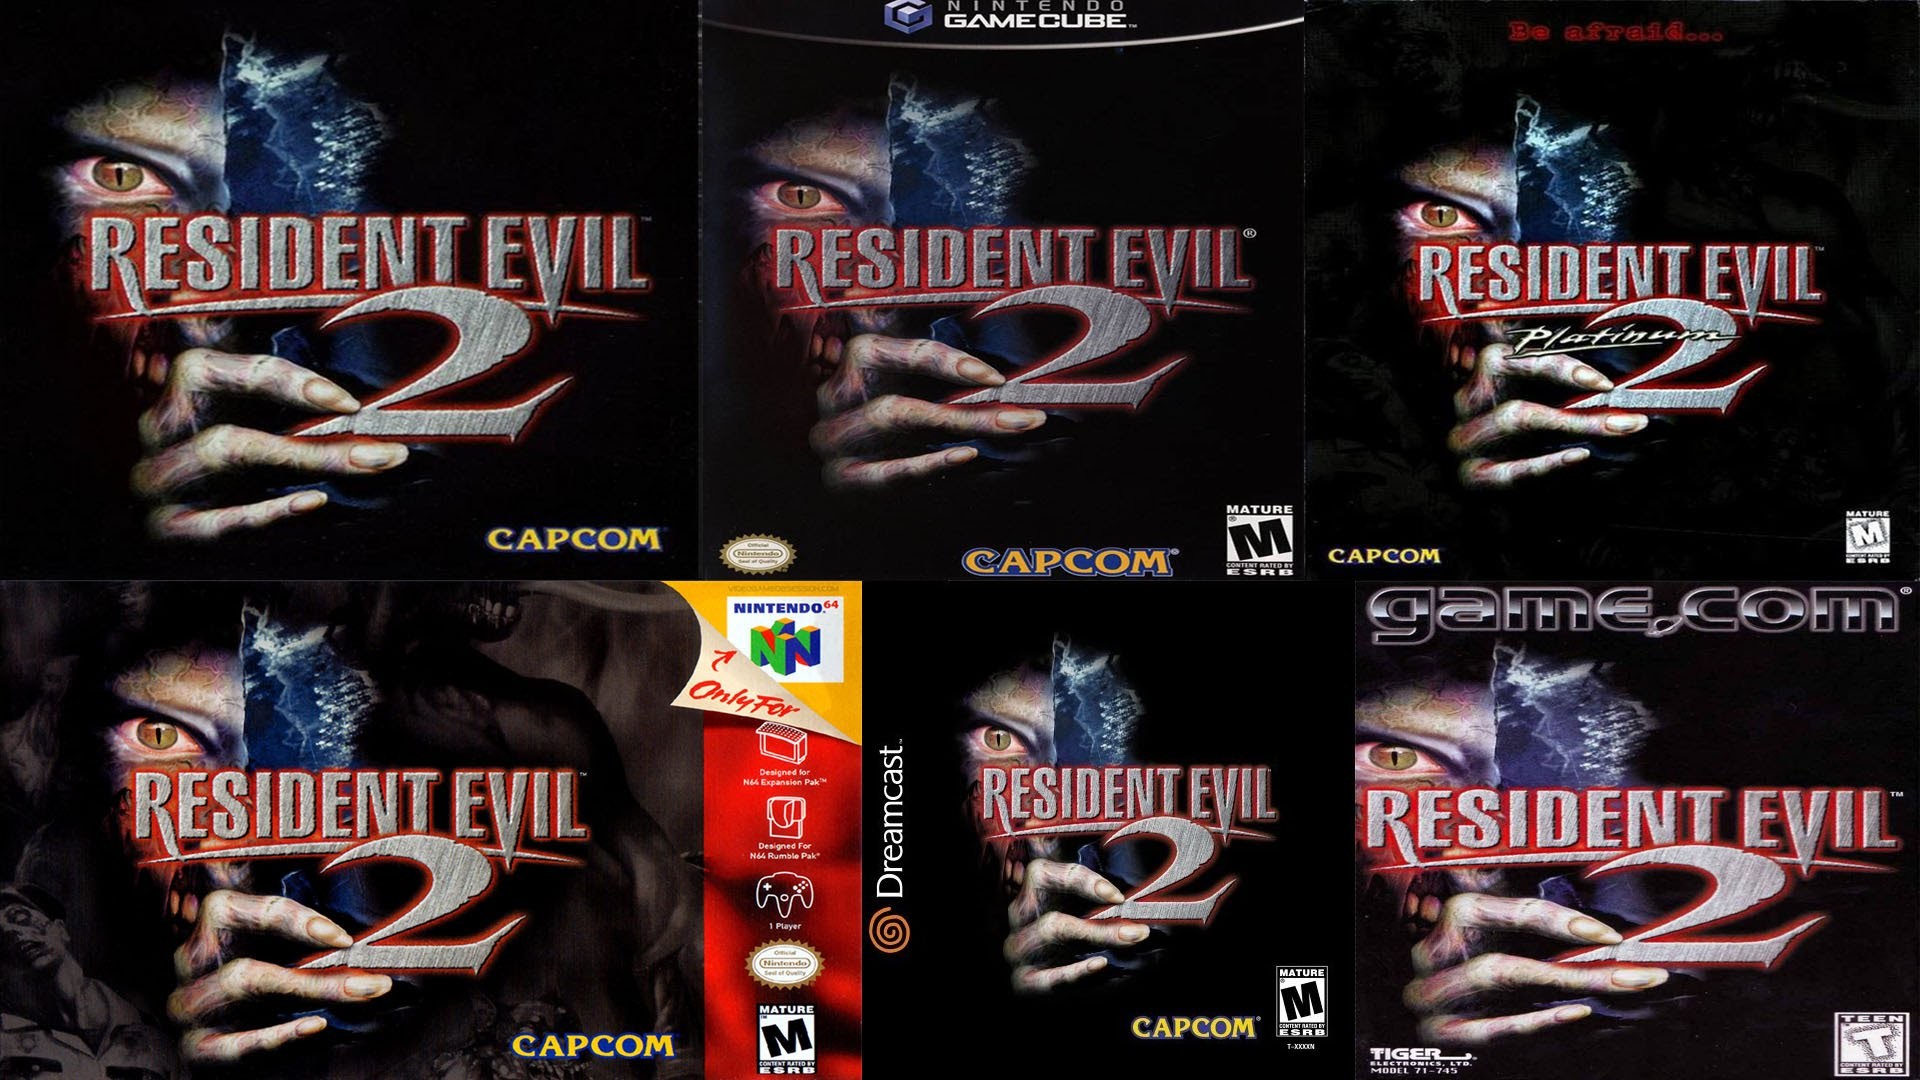 Resident evil 2 nintendo. Resident Evil 2 ps1. Resident Evil 2 Nintendo 64. Resident Evil 2 - Dual Shock [Claire] ps1.